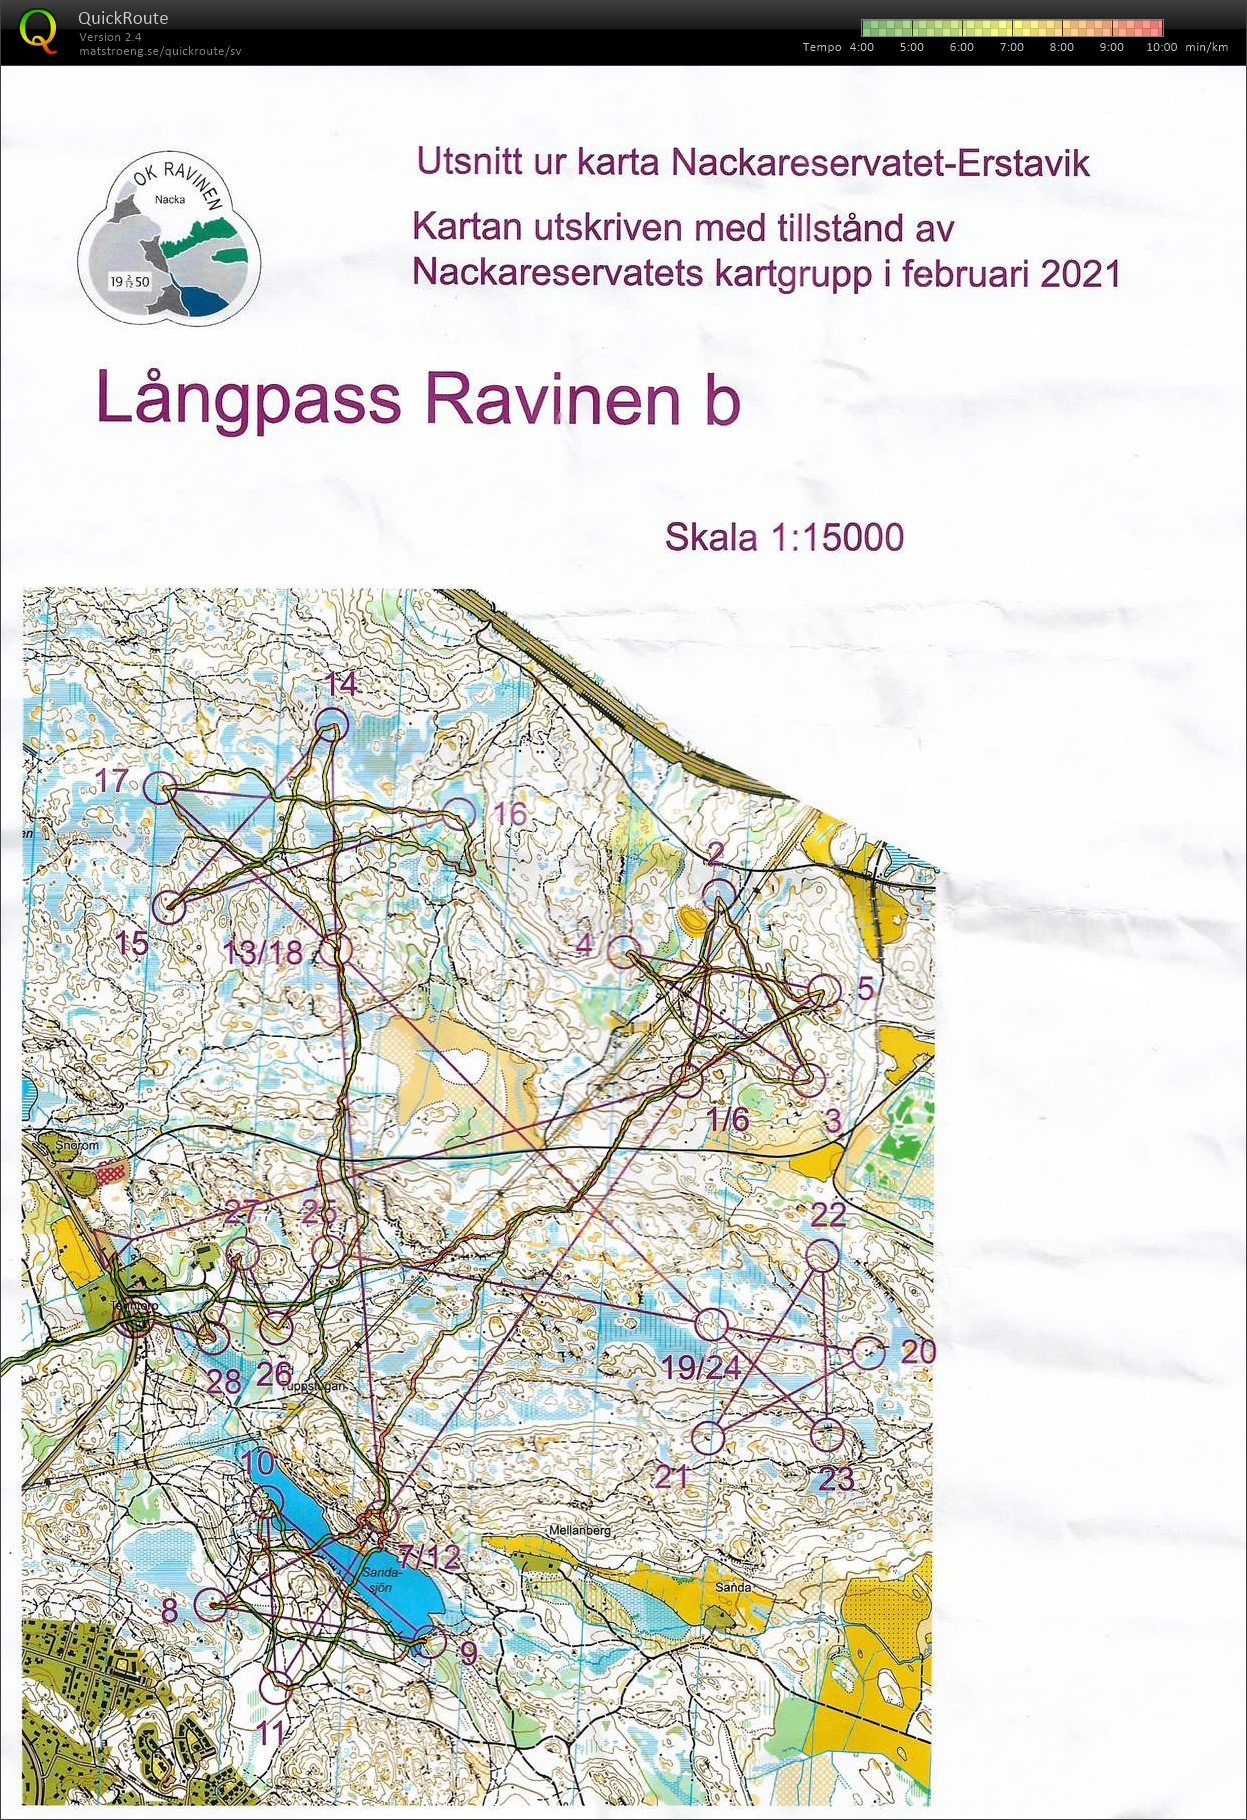 Långpass (2021-02-20)